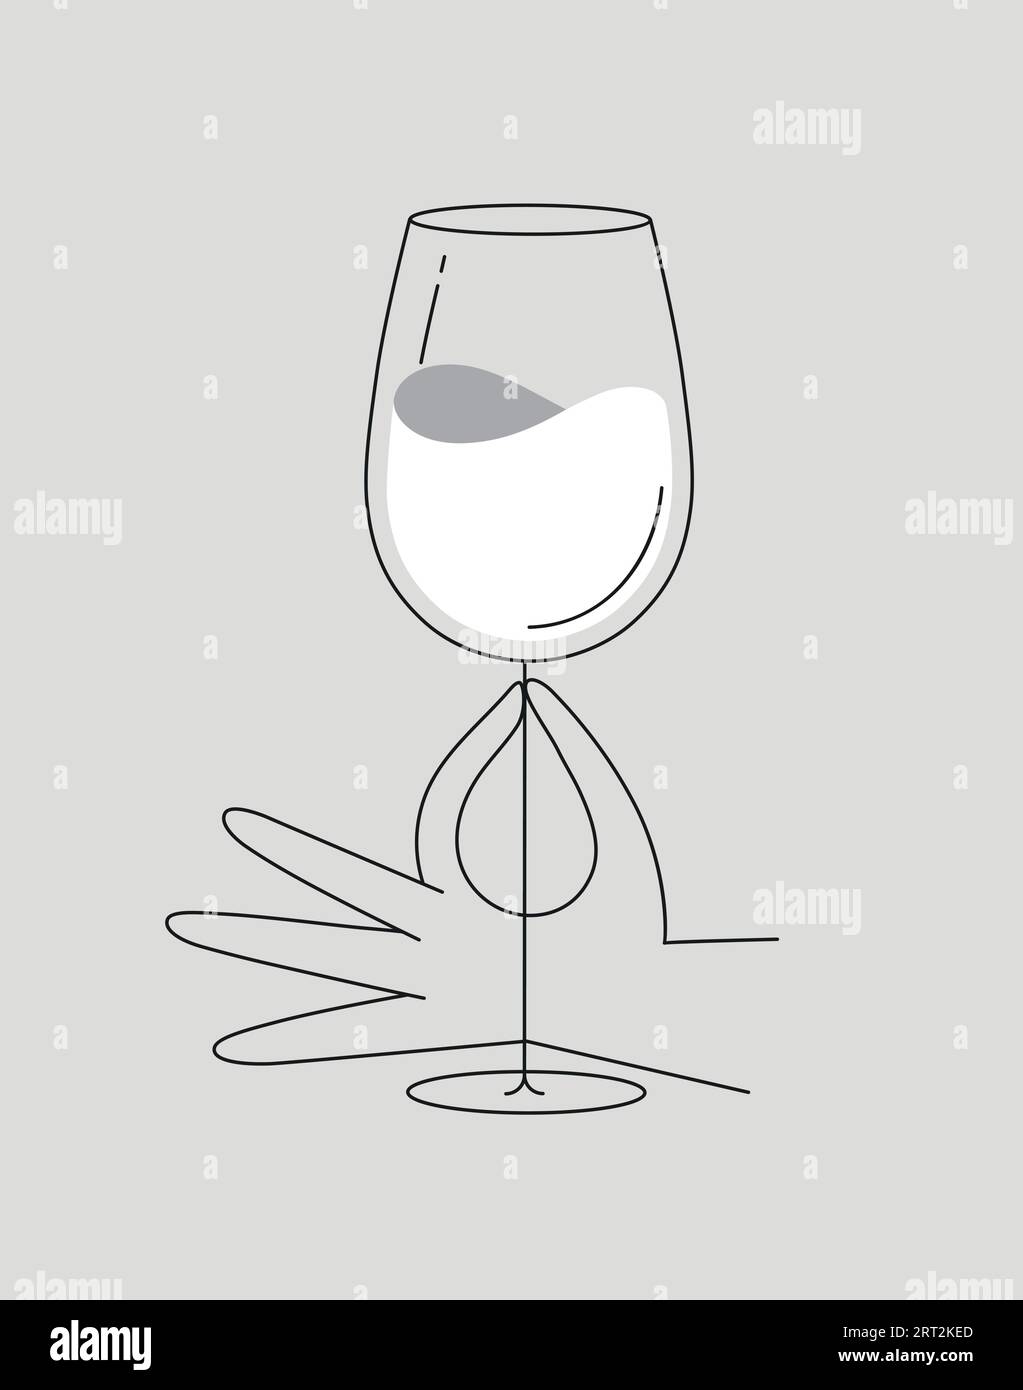 Hand hält ein Glas Wein Zeichnung in flacher Linie Zeichnung auf dunkelblauem Hintergrund Stock Vektor